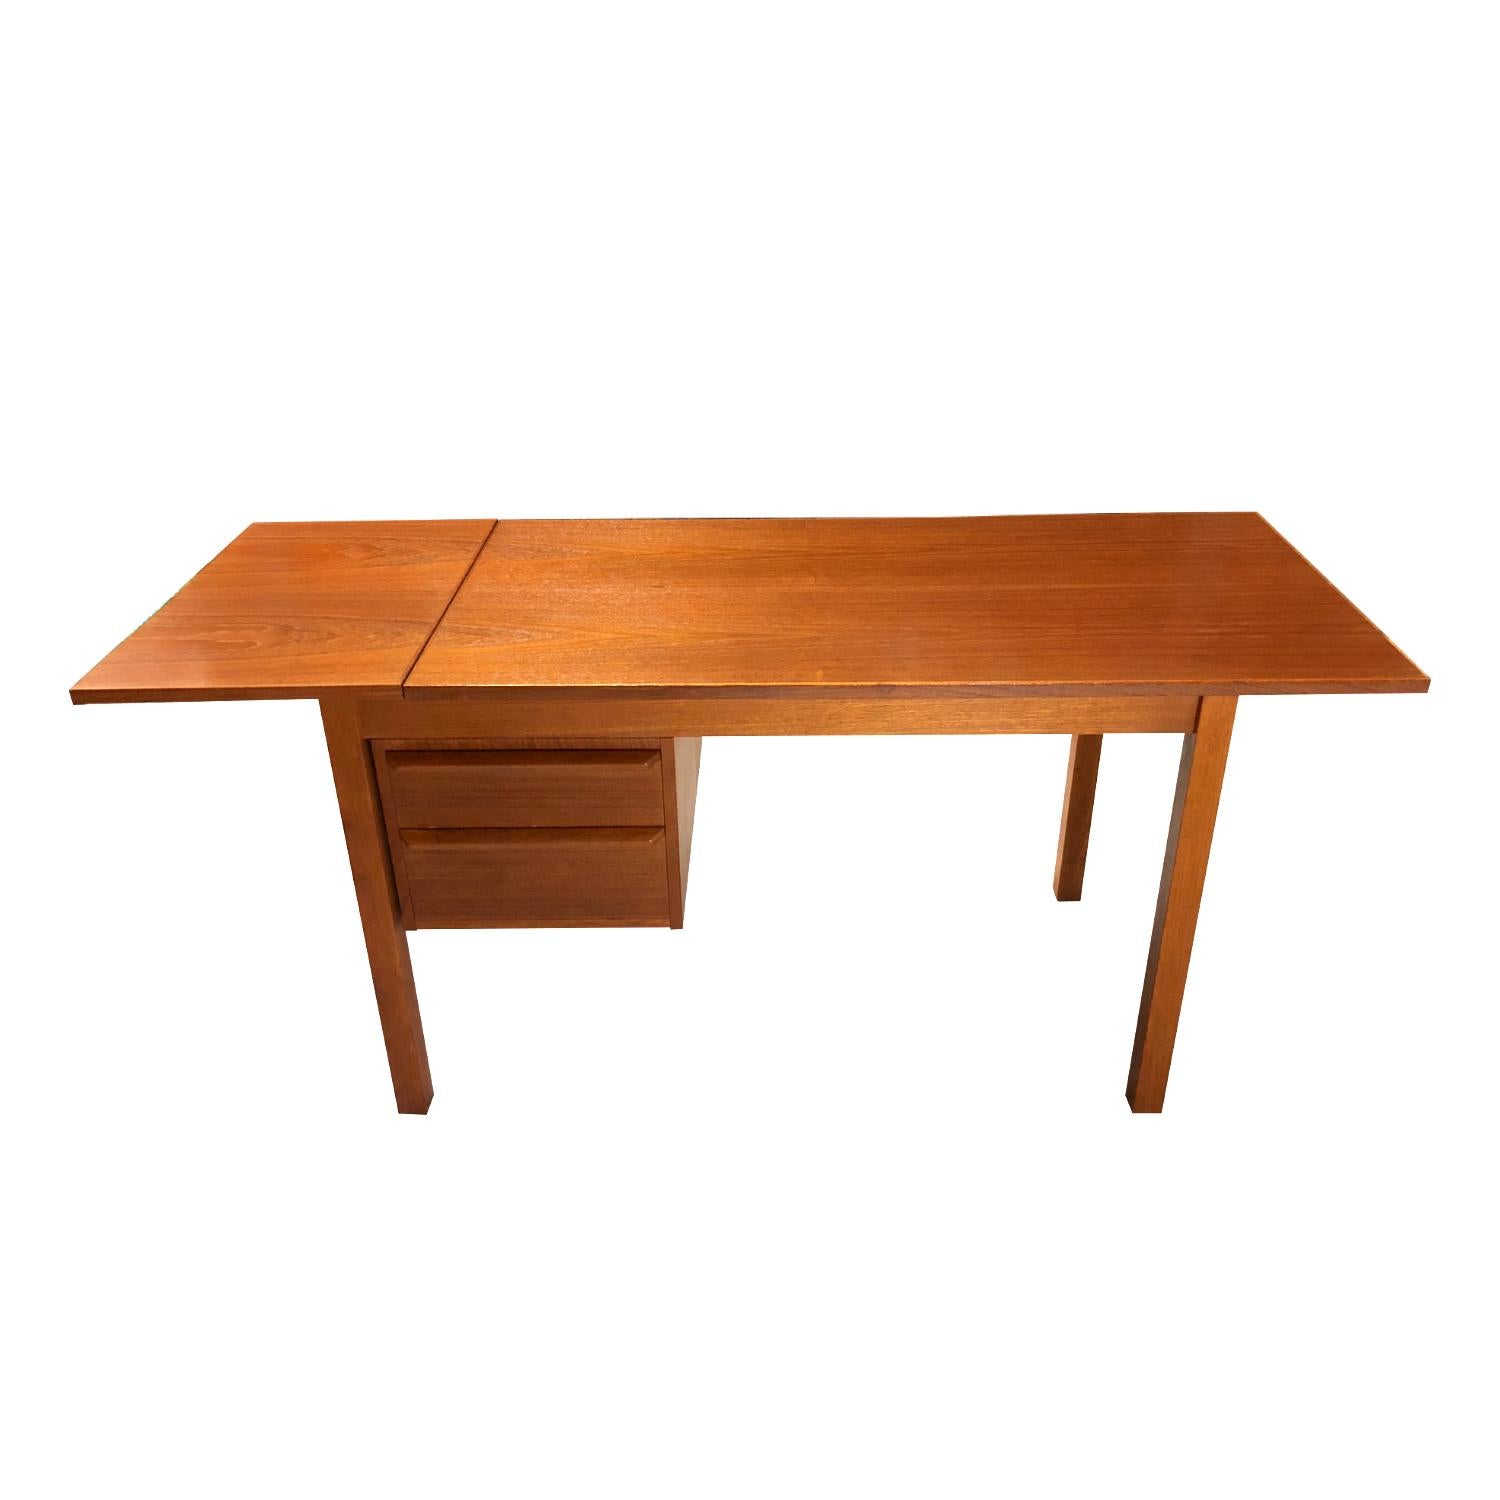 Mid-20th Century Arne Vodder Style Danish Teak Desk with Sliding Drop-Leaf Top